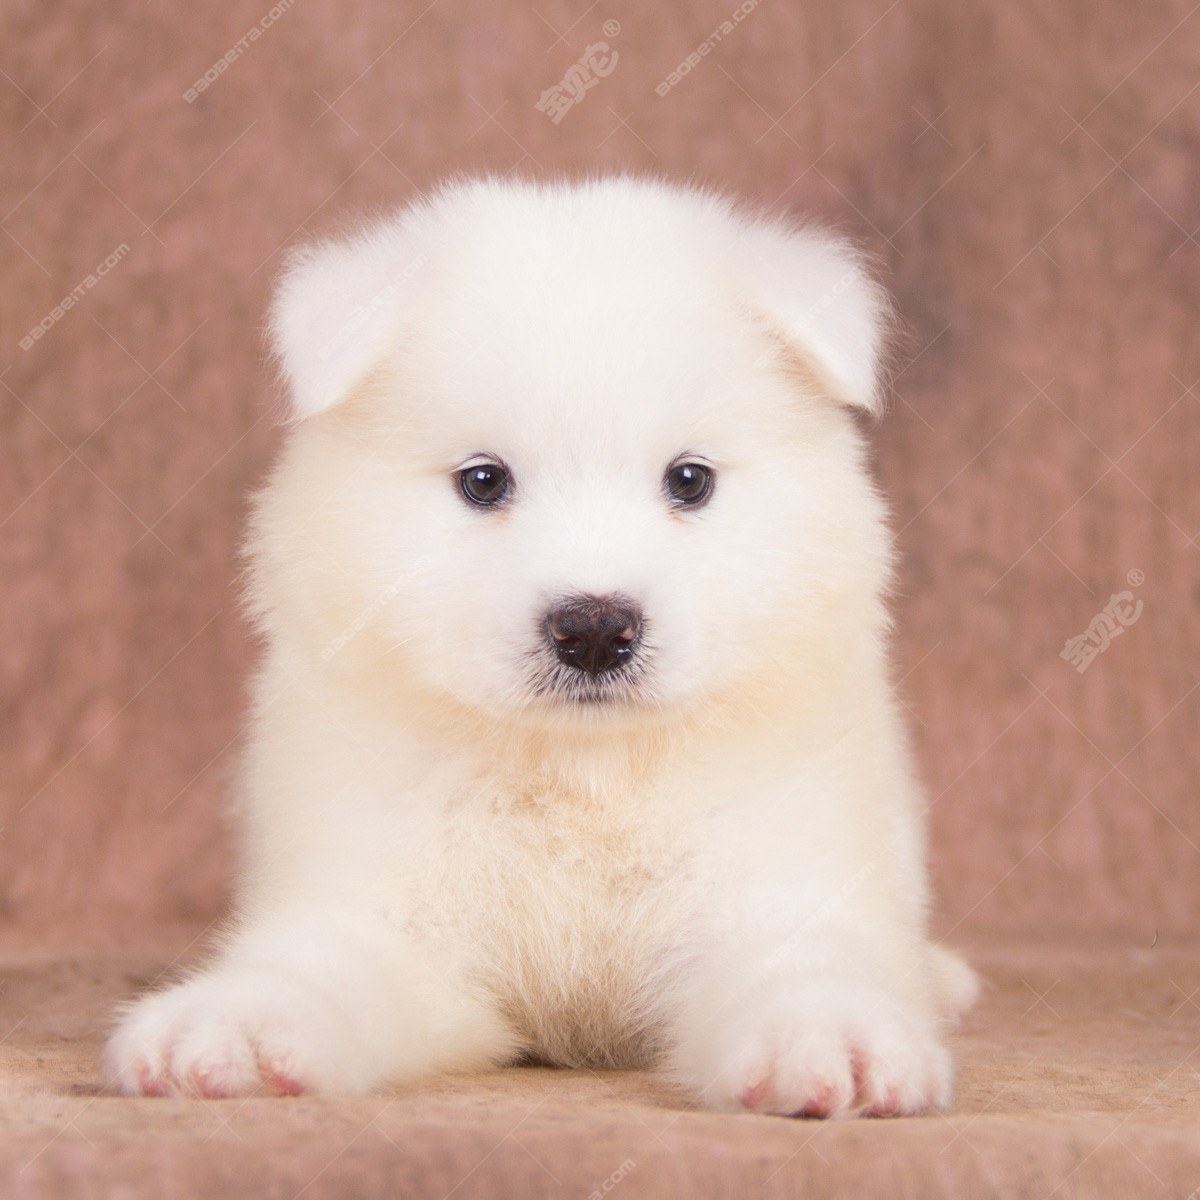 纯种萨摩耶犬幼犬狗狗出售 宠物萨摩耶犬可支付宝交易 萨摩耶犬 /编号10038700 - 宝贝它